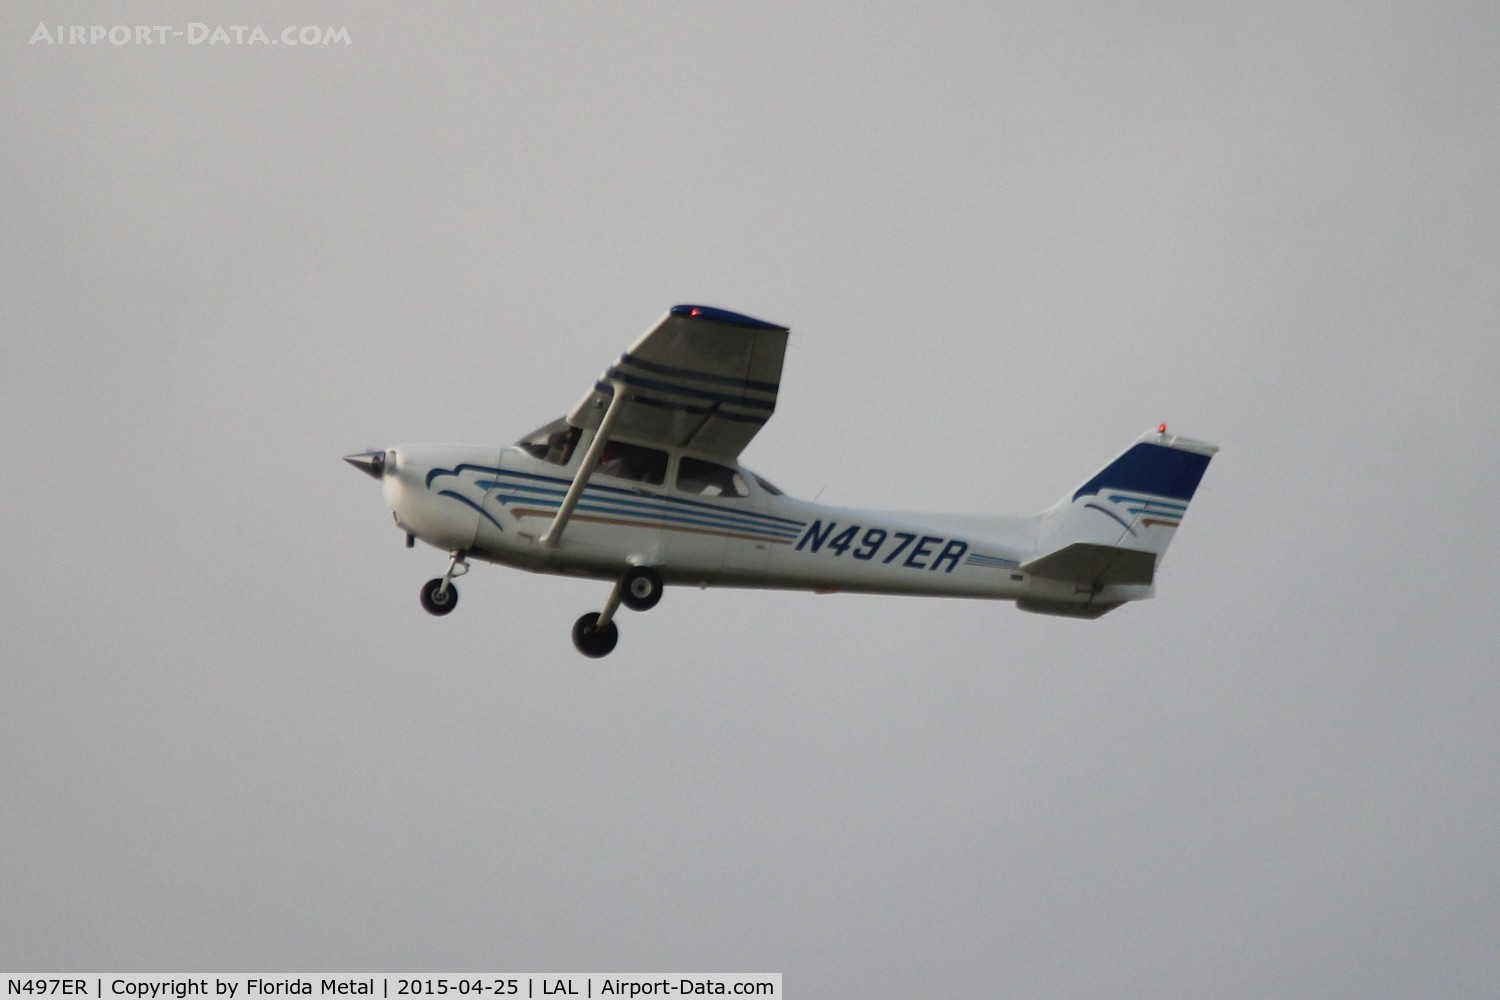 N497ER, 1998 Cessna 172R C/N 17280673, Embry Riddle